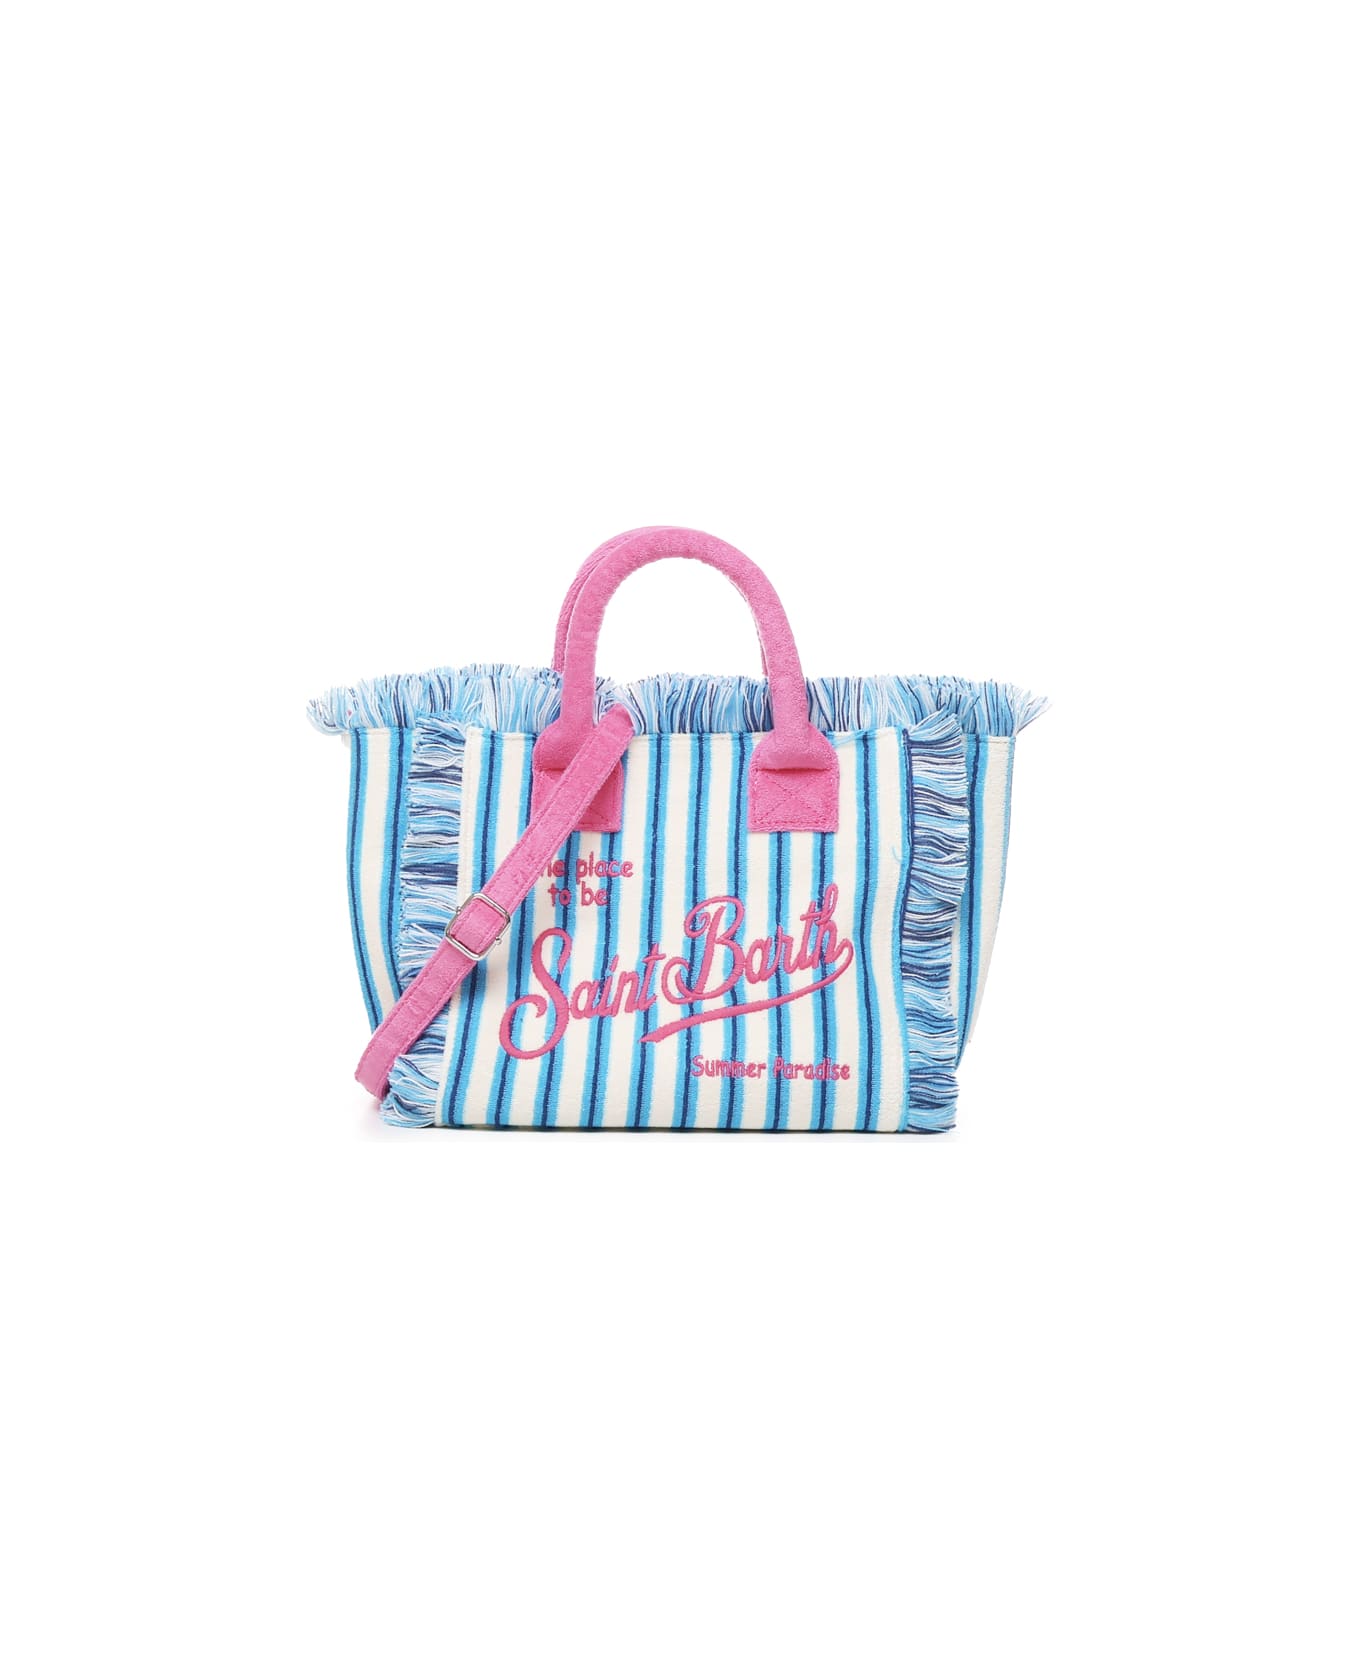 MC2 Saint Barth Colette Bag With Handles And Shoulder Strap - Azzurro, azzurro chiaro, rosa トートバッグ